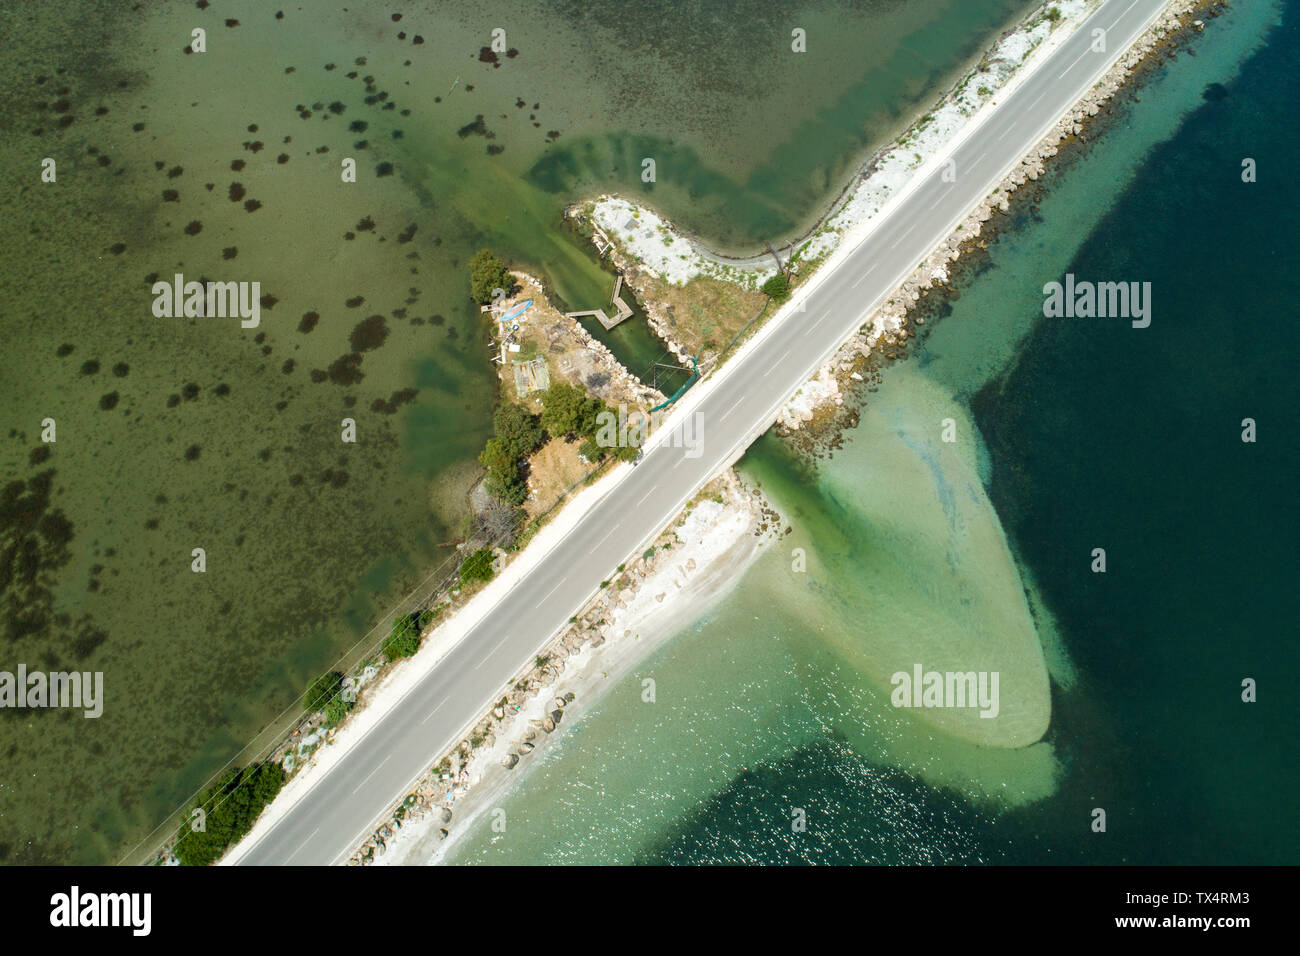 Greece, Igoumenitsa, aerial view of road and bridge in the sea at Ormos Valtou Stock Photo